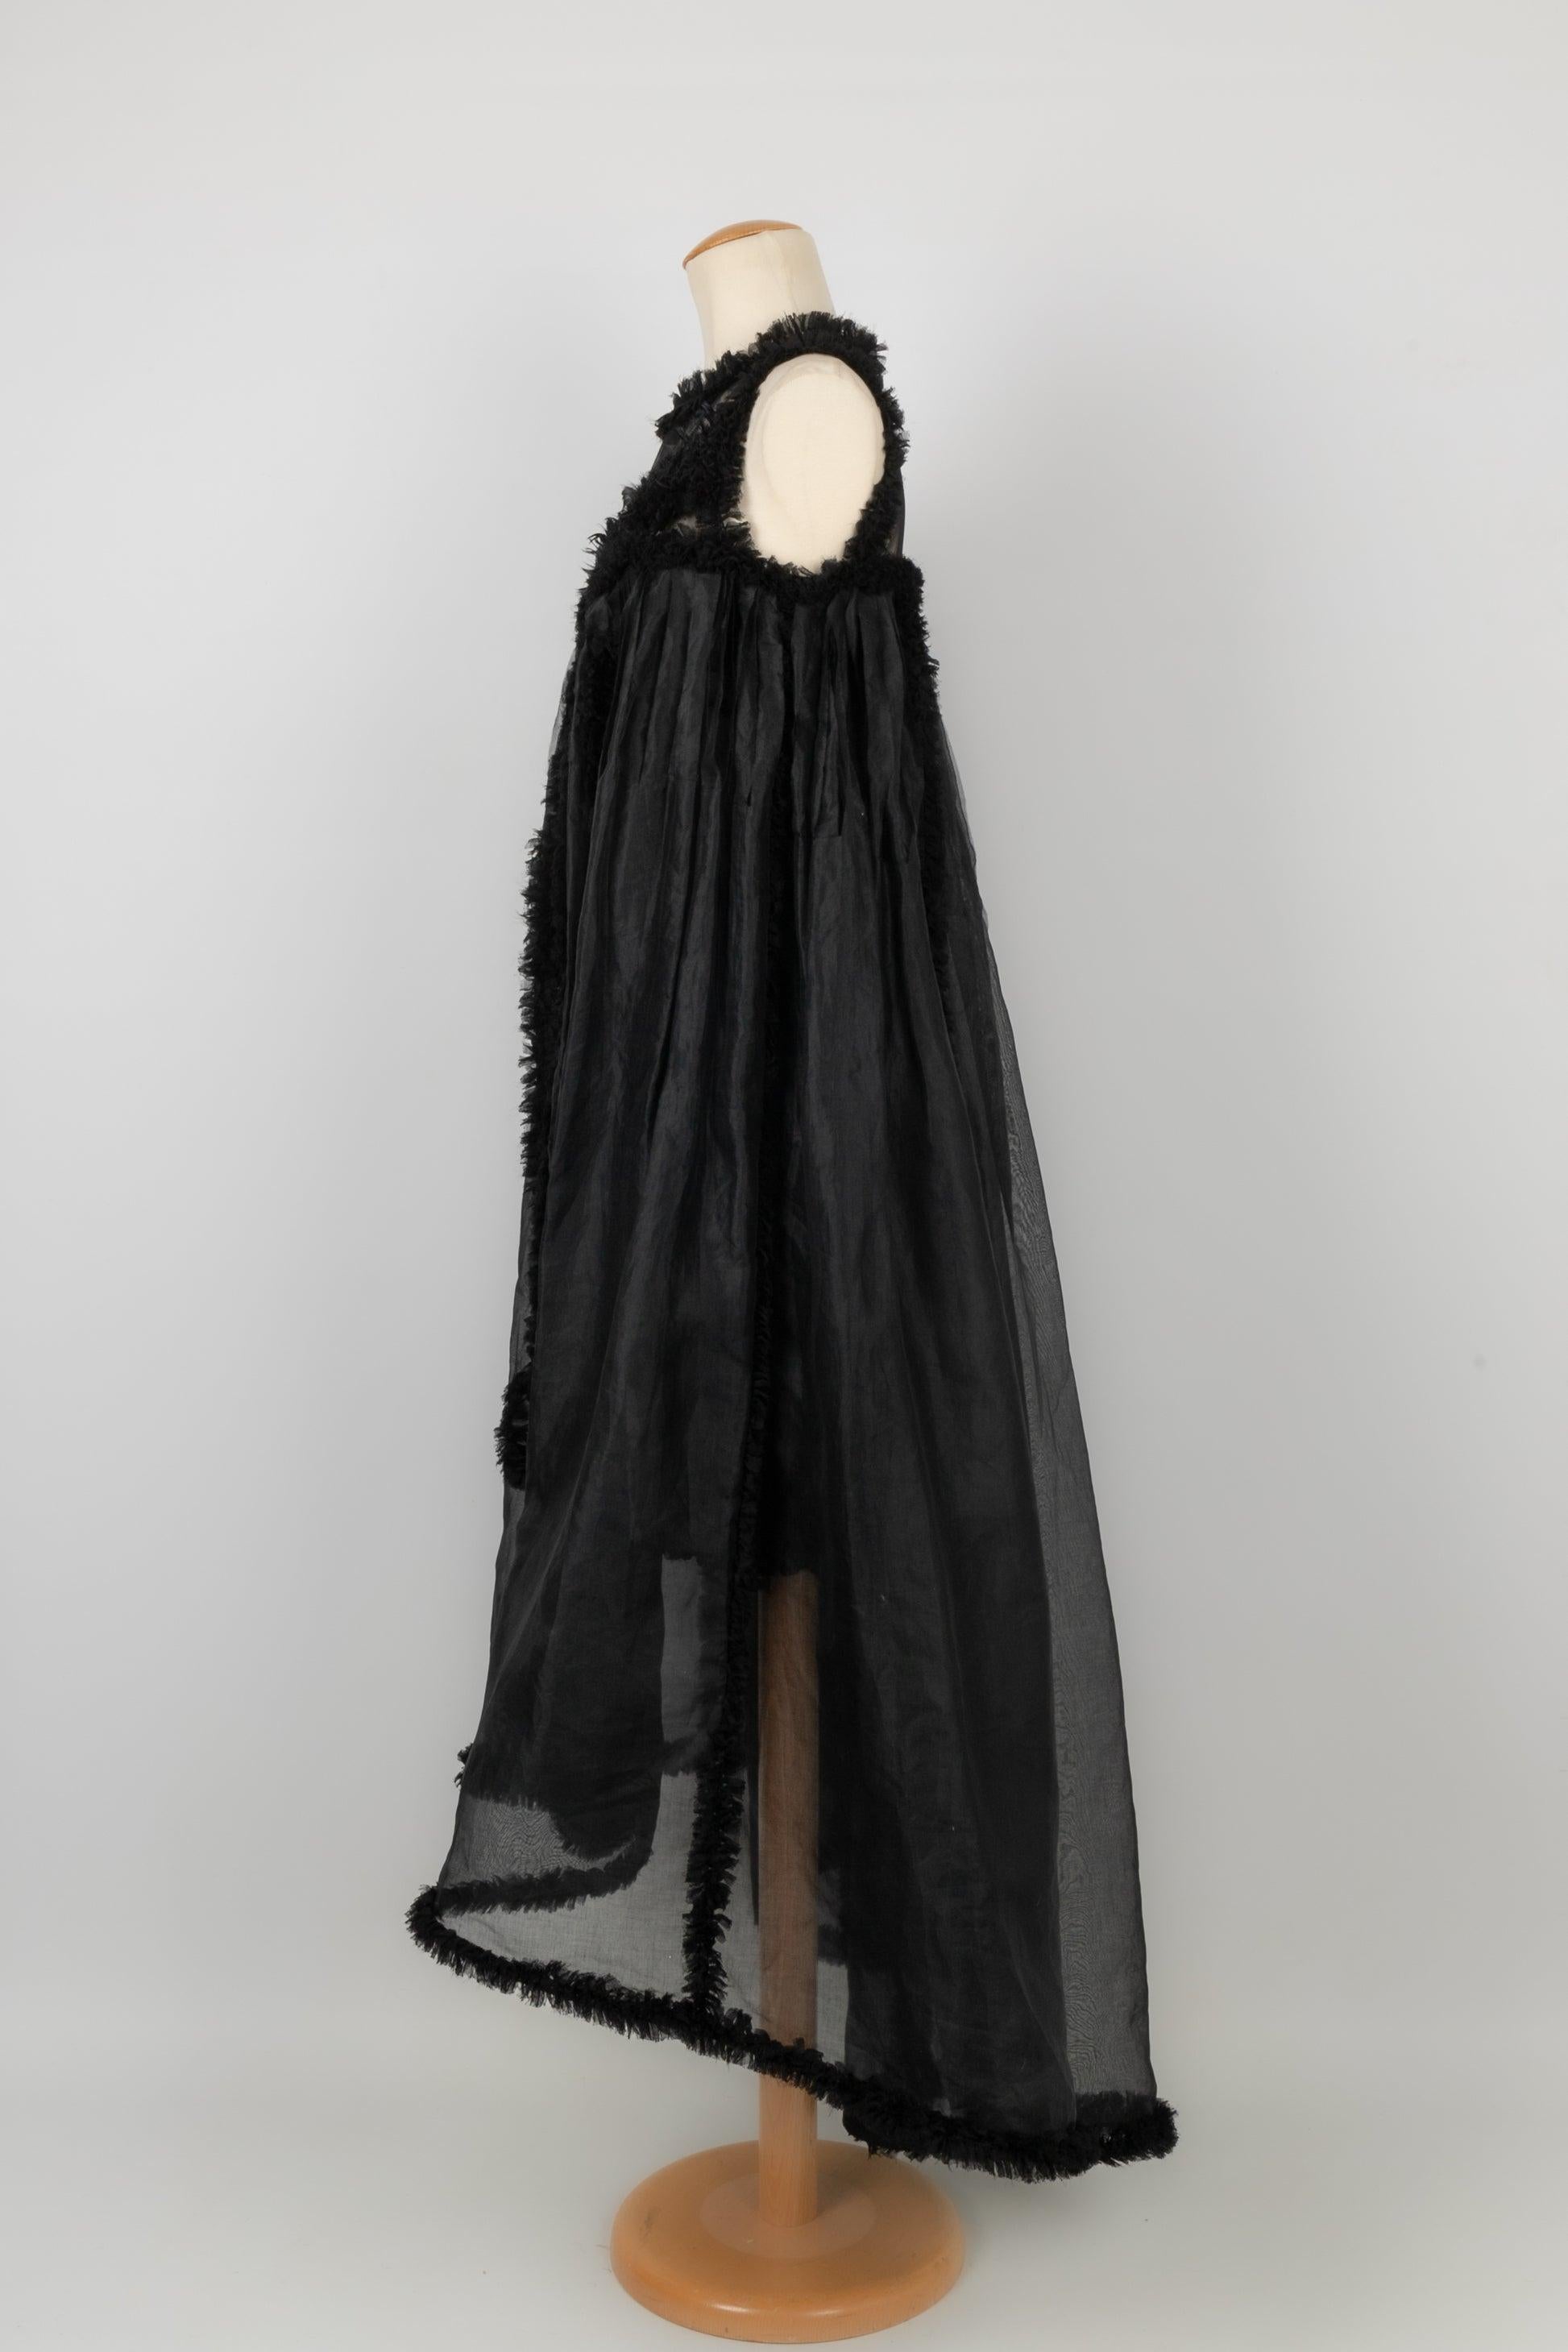 Chanel - (Made in France) Schwarzes Kleid aus Seidentaft, mit Federn genäht und auf der Vorderseite in zwei Seiten geteilt, Öffnung für ein kürzeres Kleid. Größe 36FR.
Collection Prêt-à-Porter Printemps-Eté 2011 sous la direction de Karl Lagerfeld.